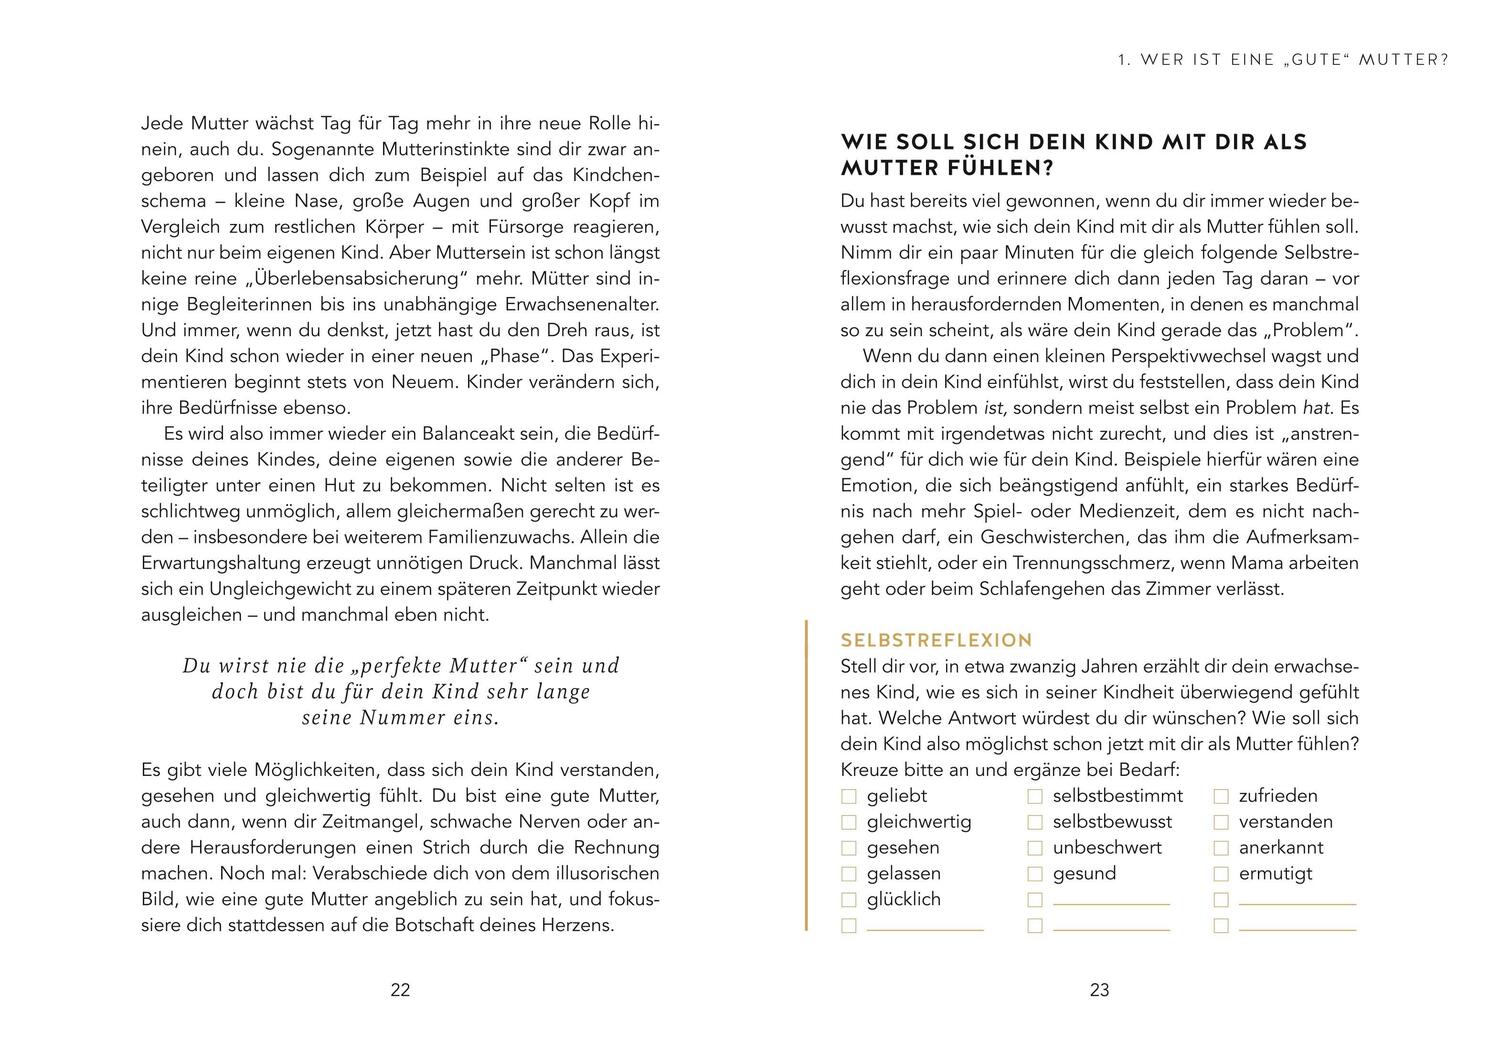 Bild: 9783833886997 | Intuitives Muttersein | Karima Stockmann | Buch | 168 S. | Deutsch